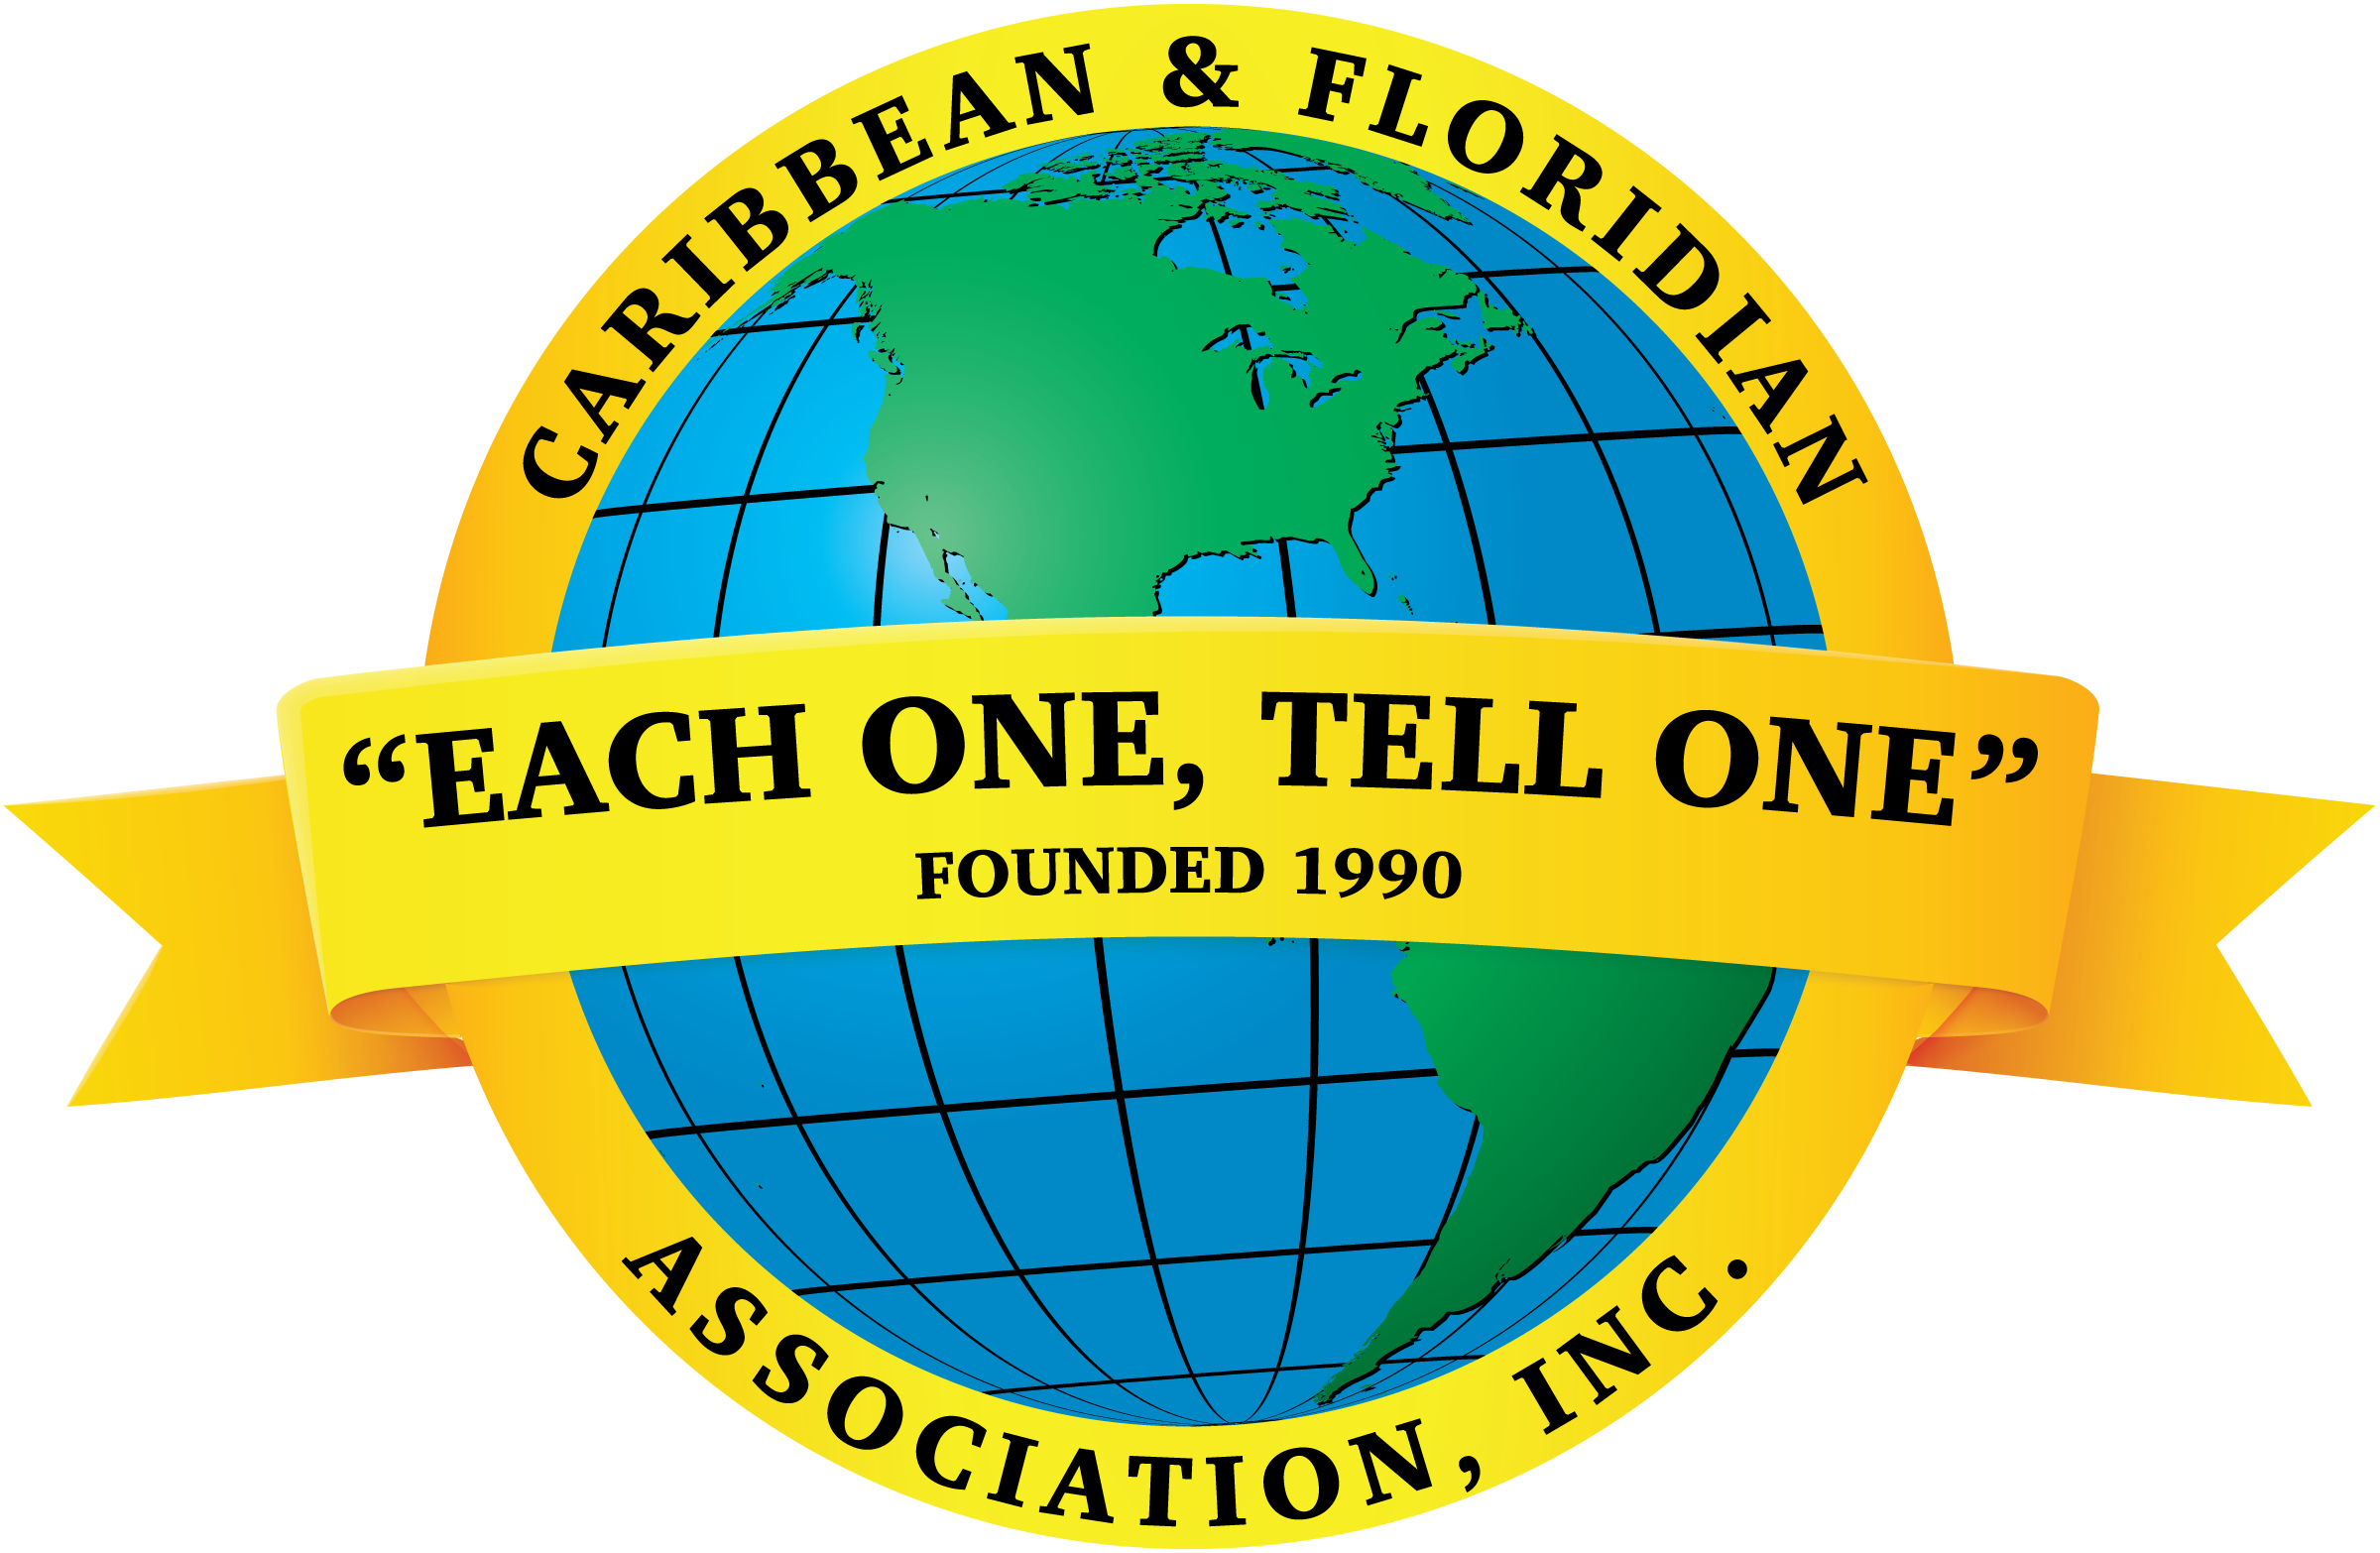 Caribbean And Floridian Association, Inc.